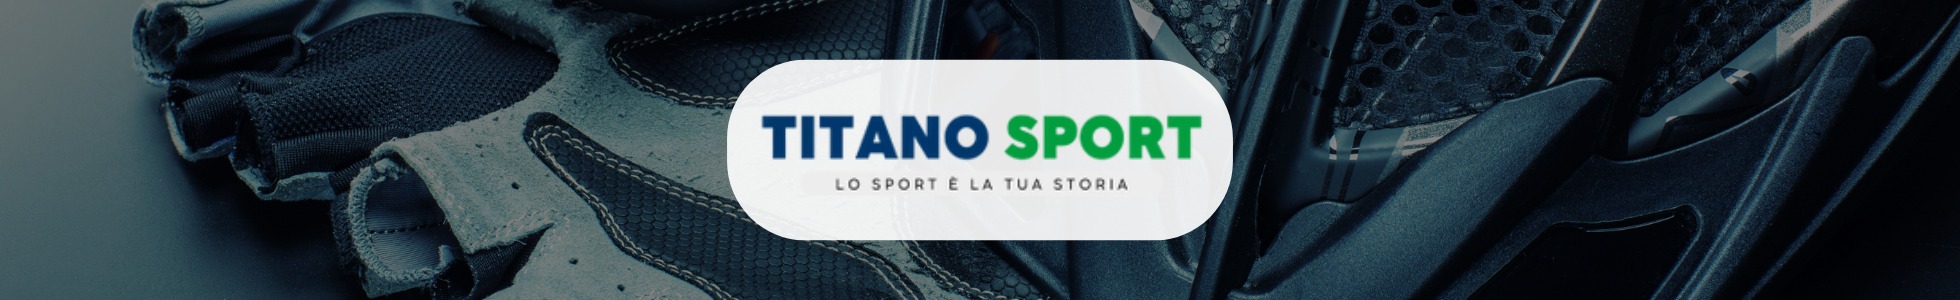 Titano Sport - Lo shop online di chi ama lo sport